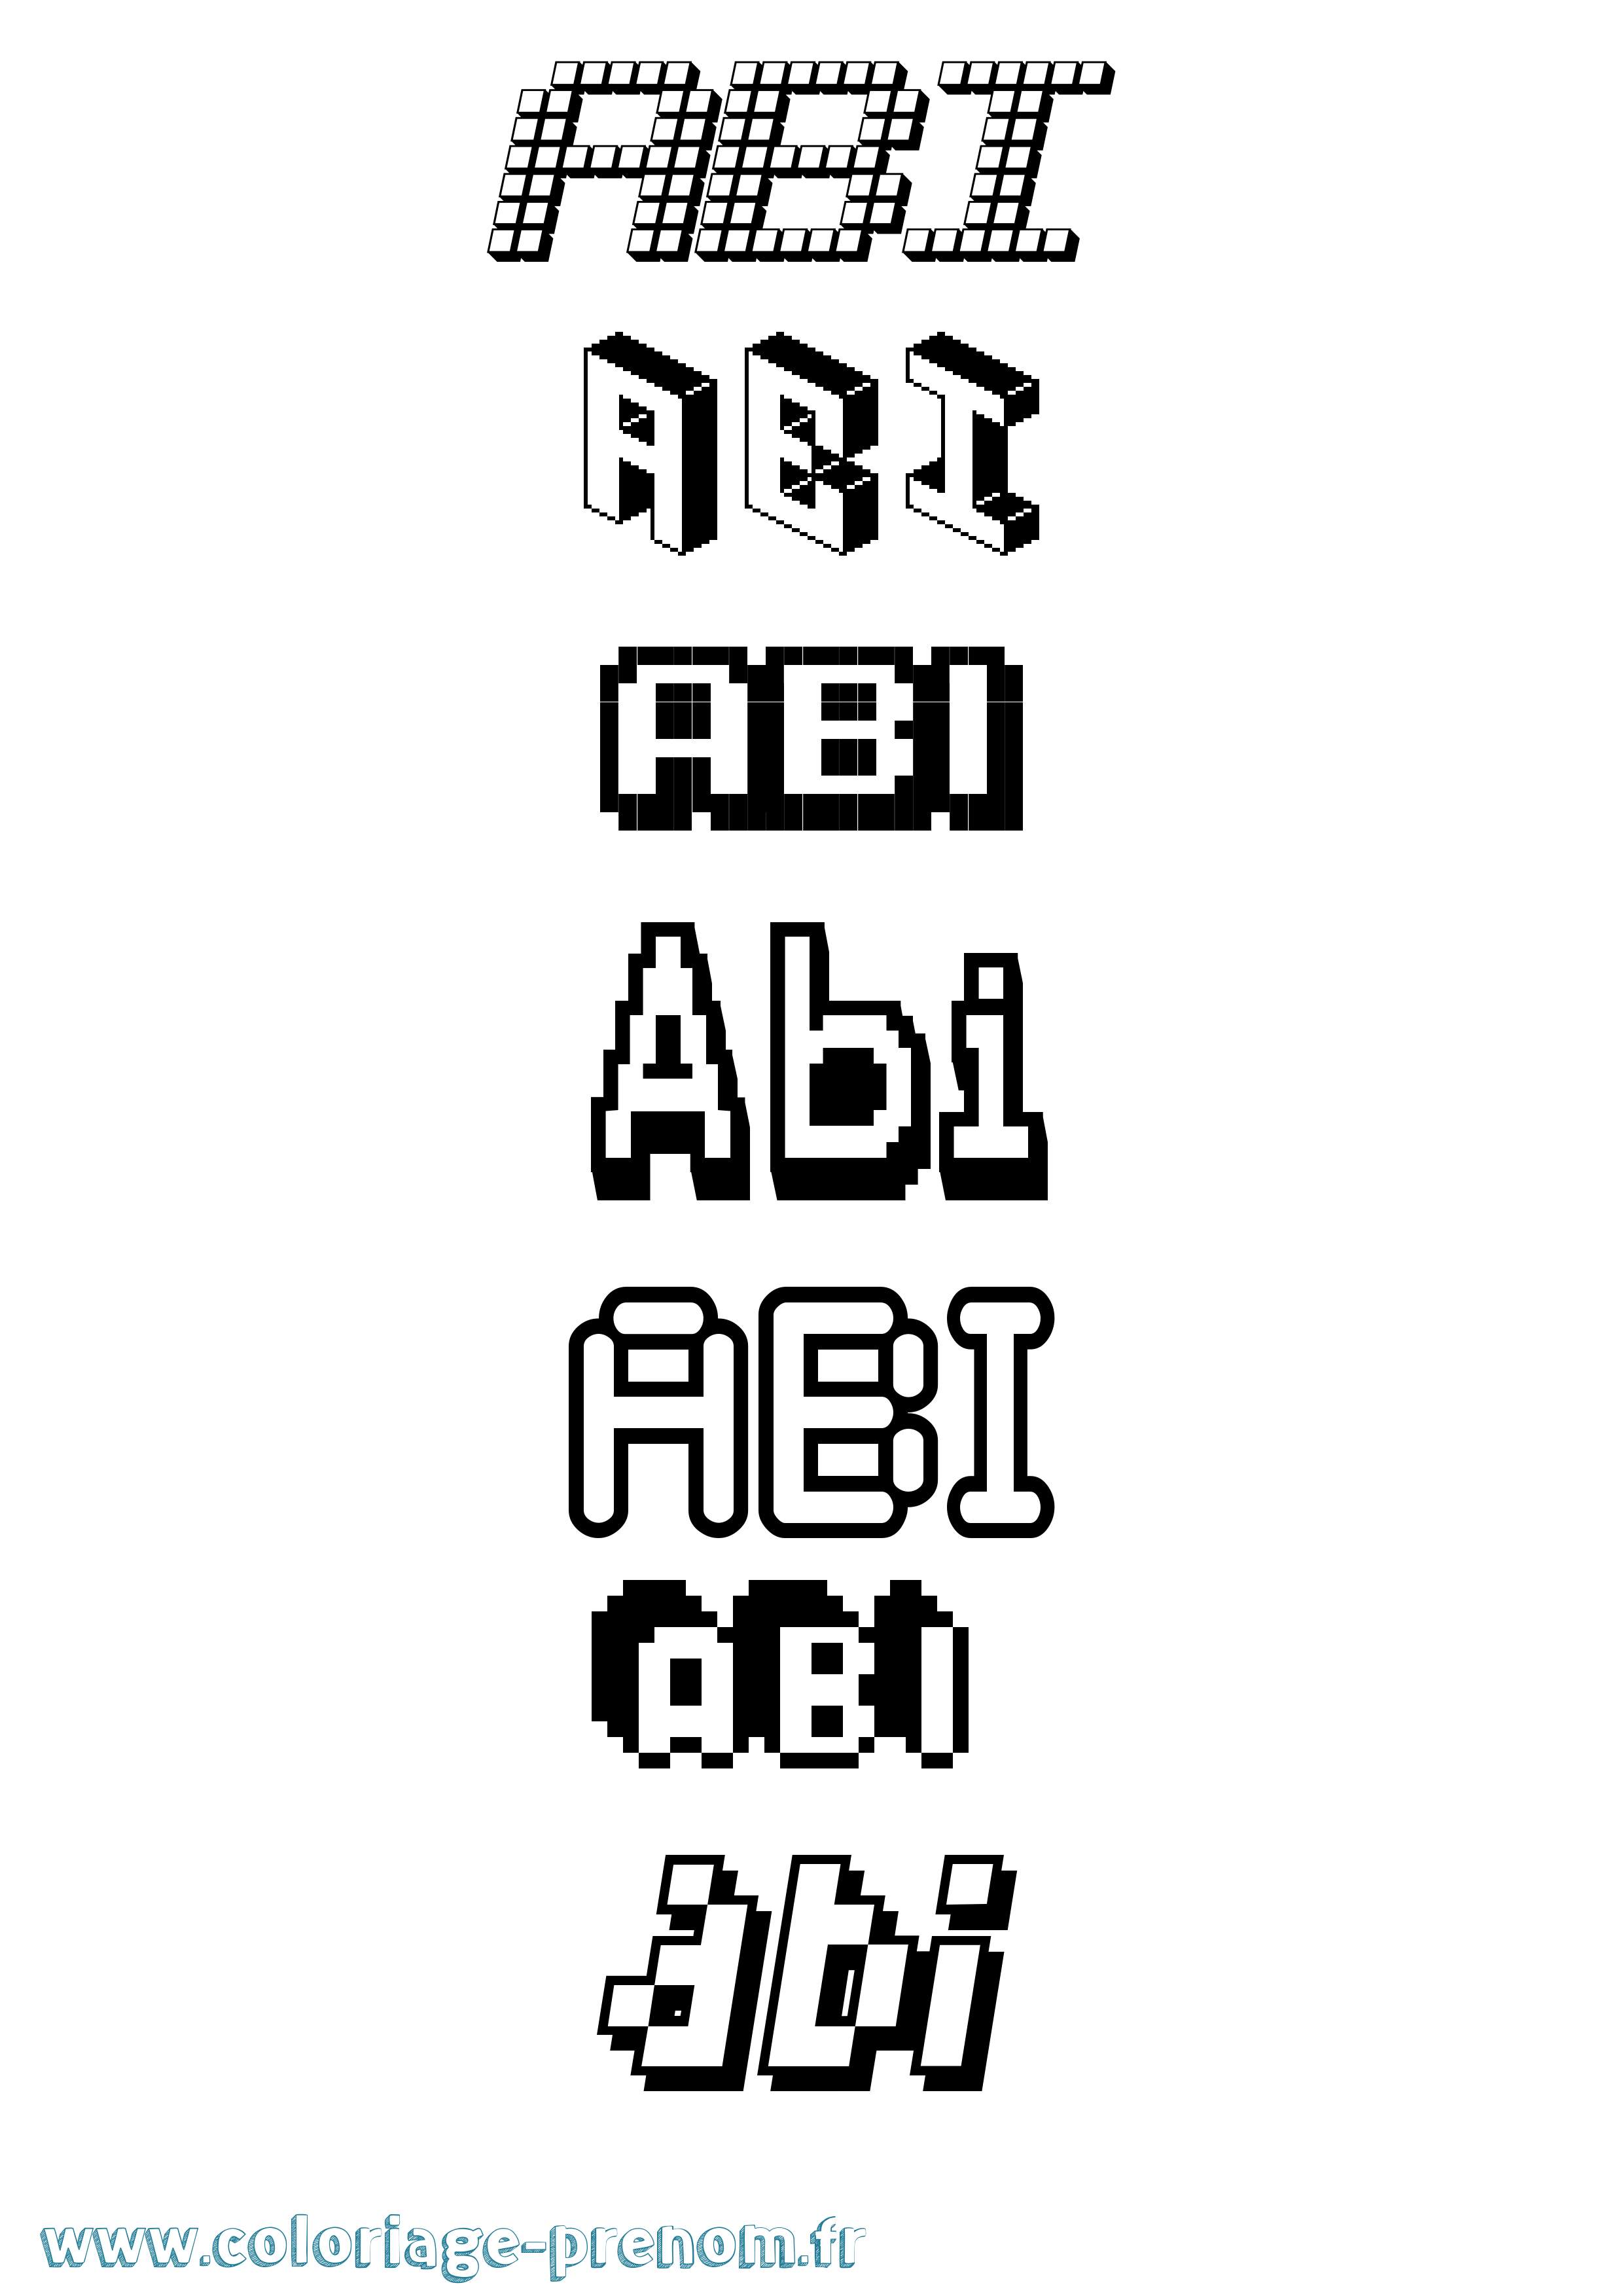 Coloriage prénom Abi Pixel